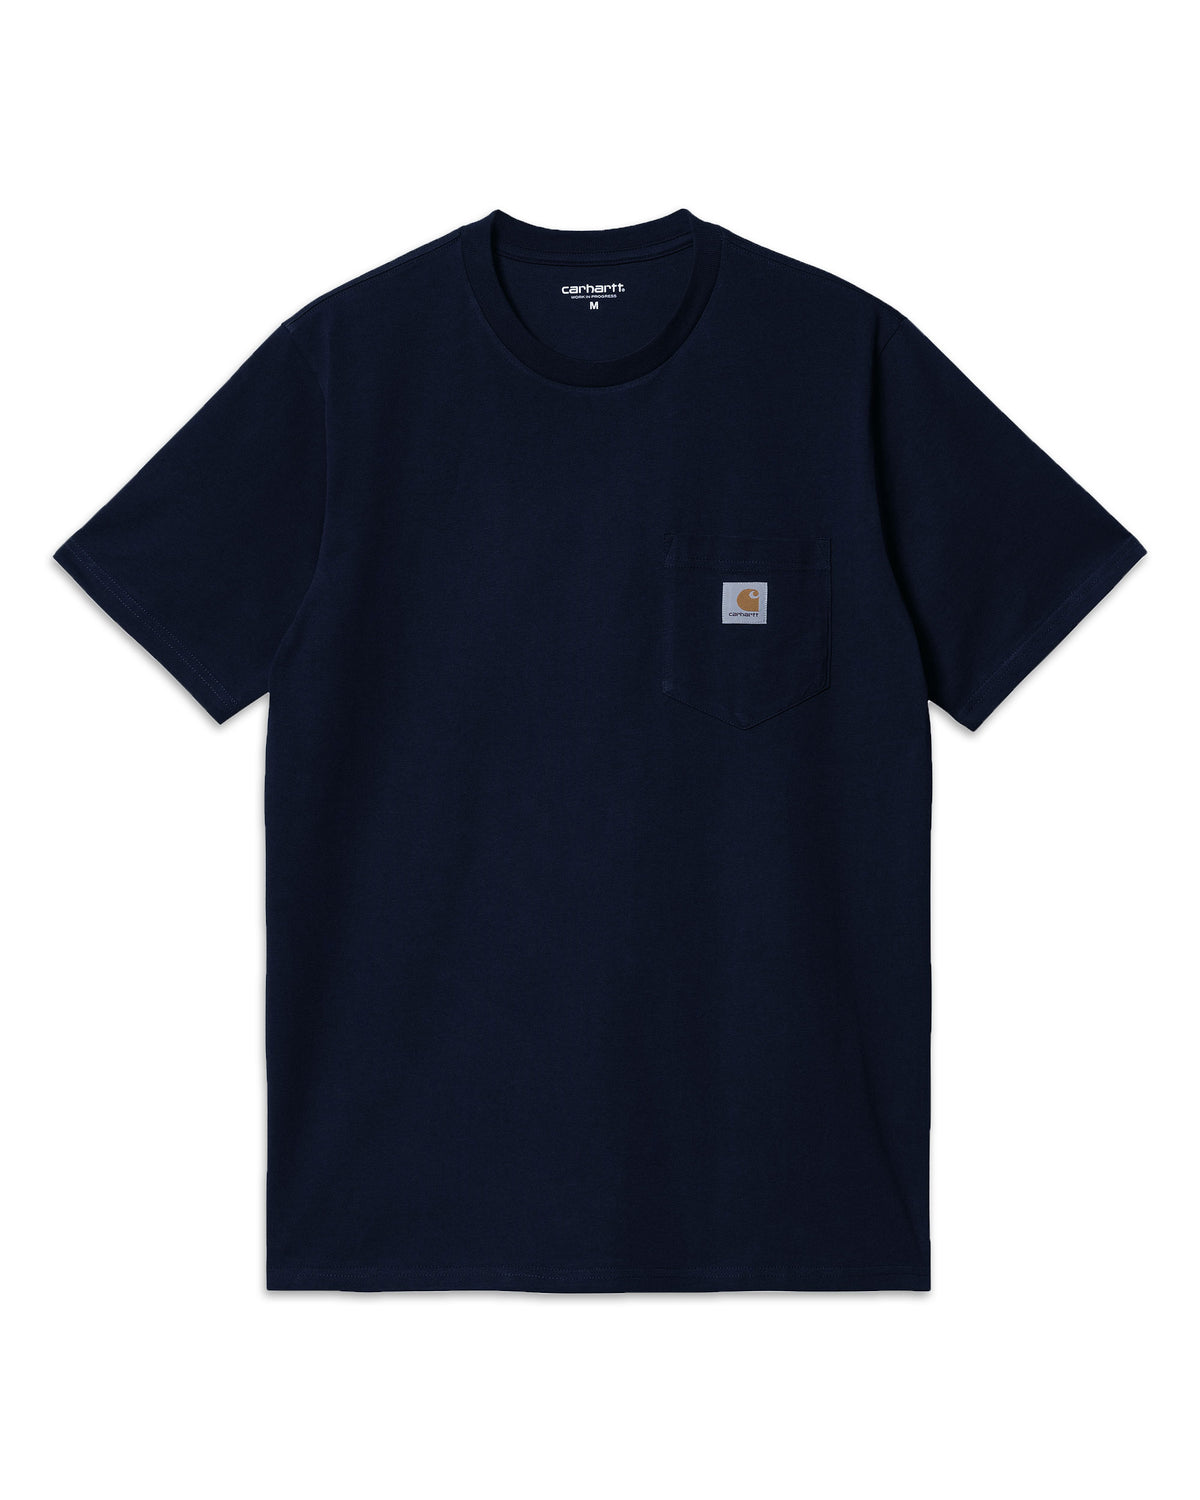 Carhartt Wip Pocket T-shirt Dark Navy